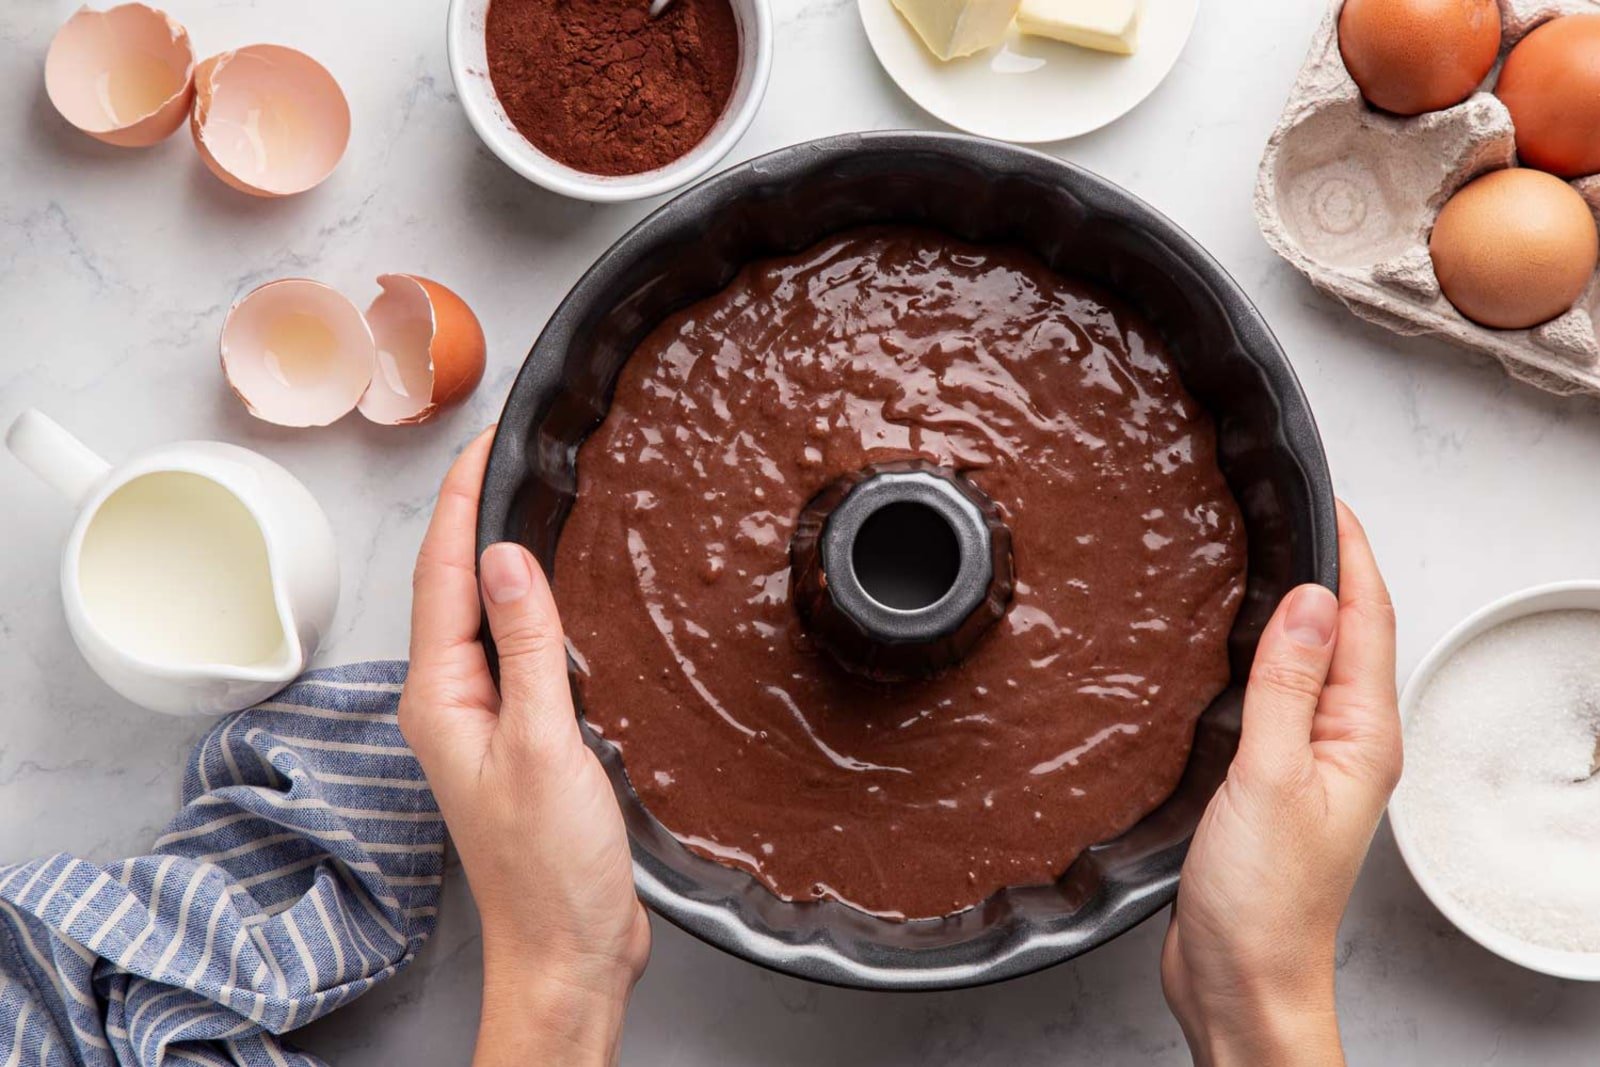 Kinder Bueno Cake – Maverick Baking